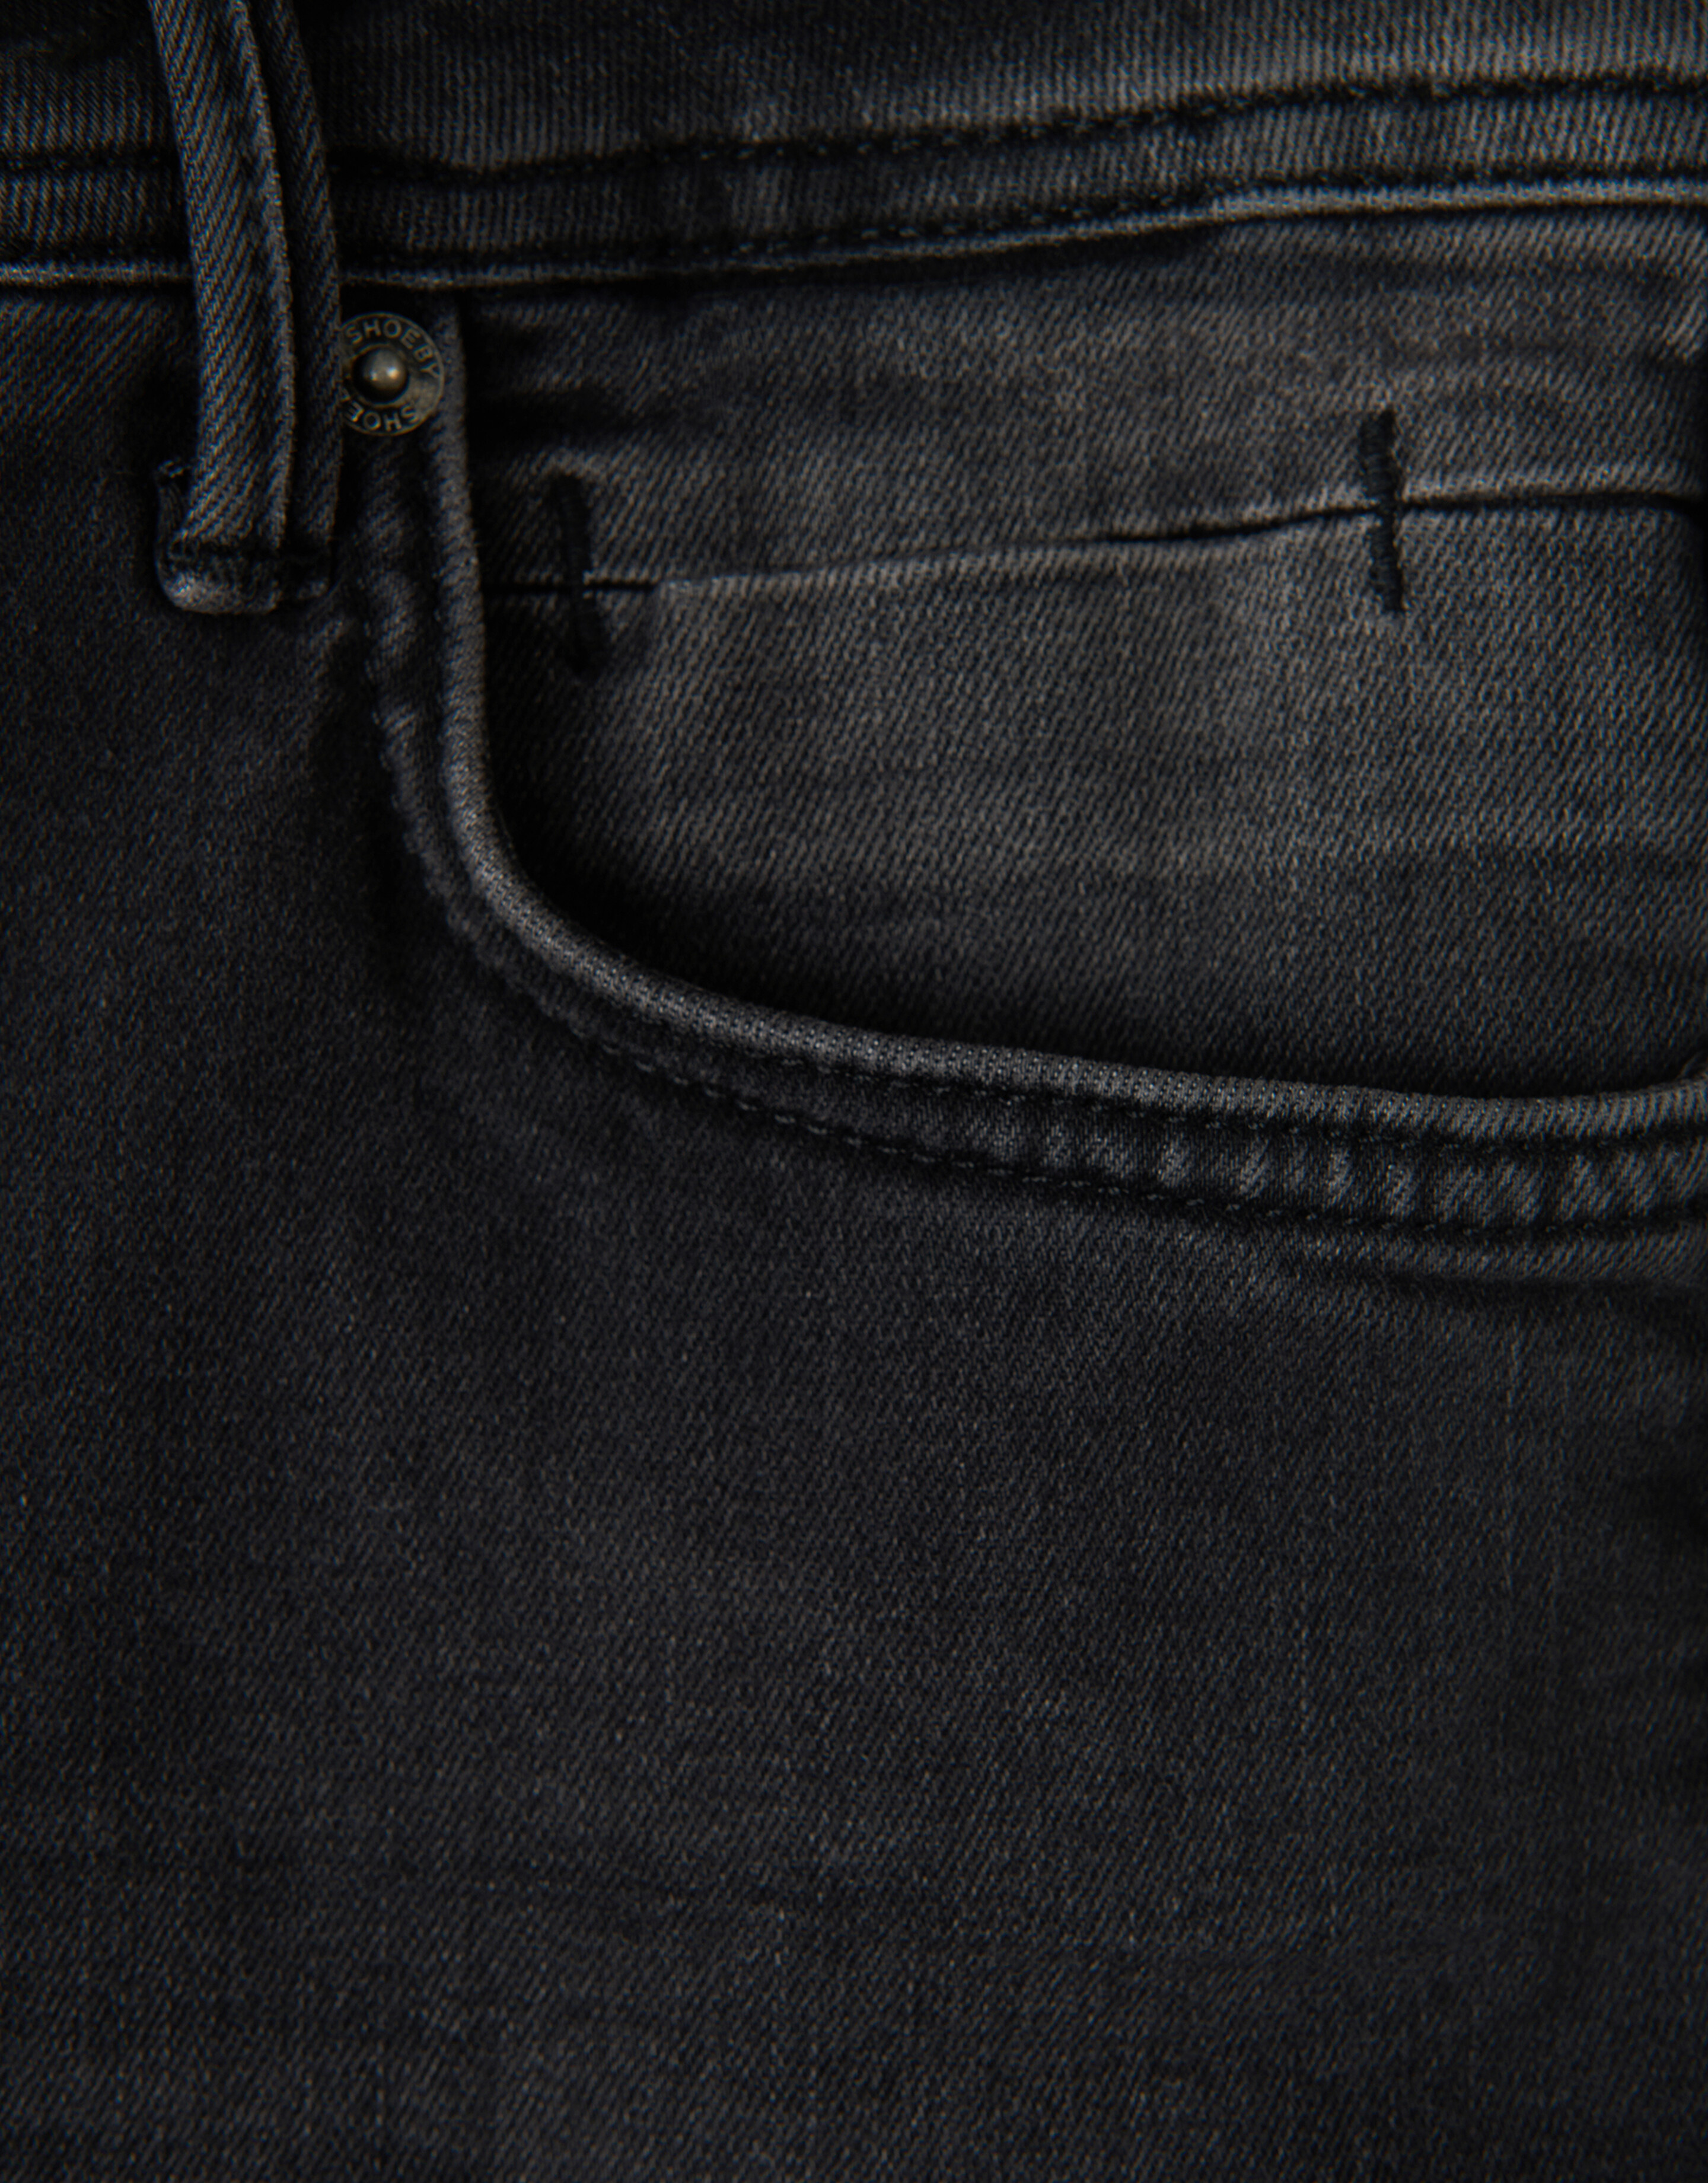 Slim Jeans Jack Washed Black L32 Refill